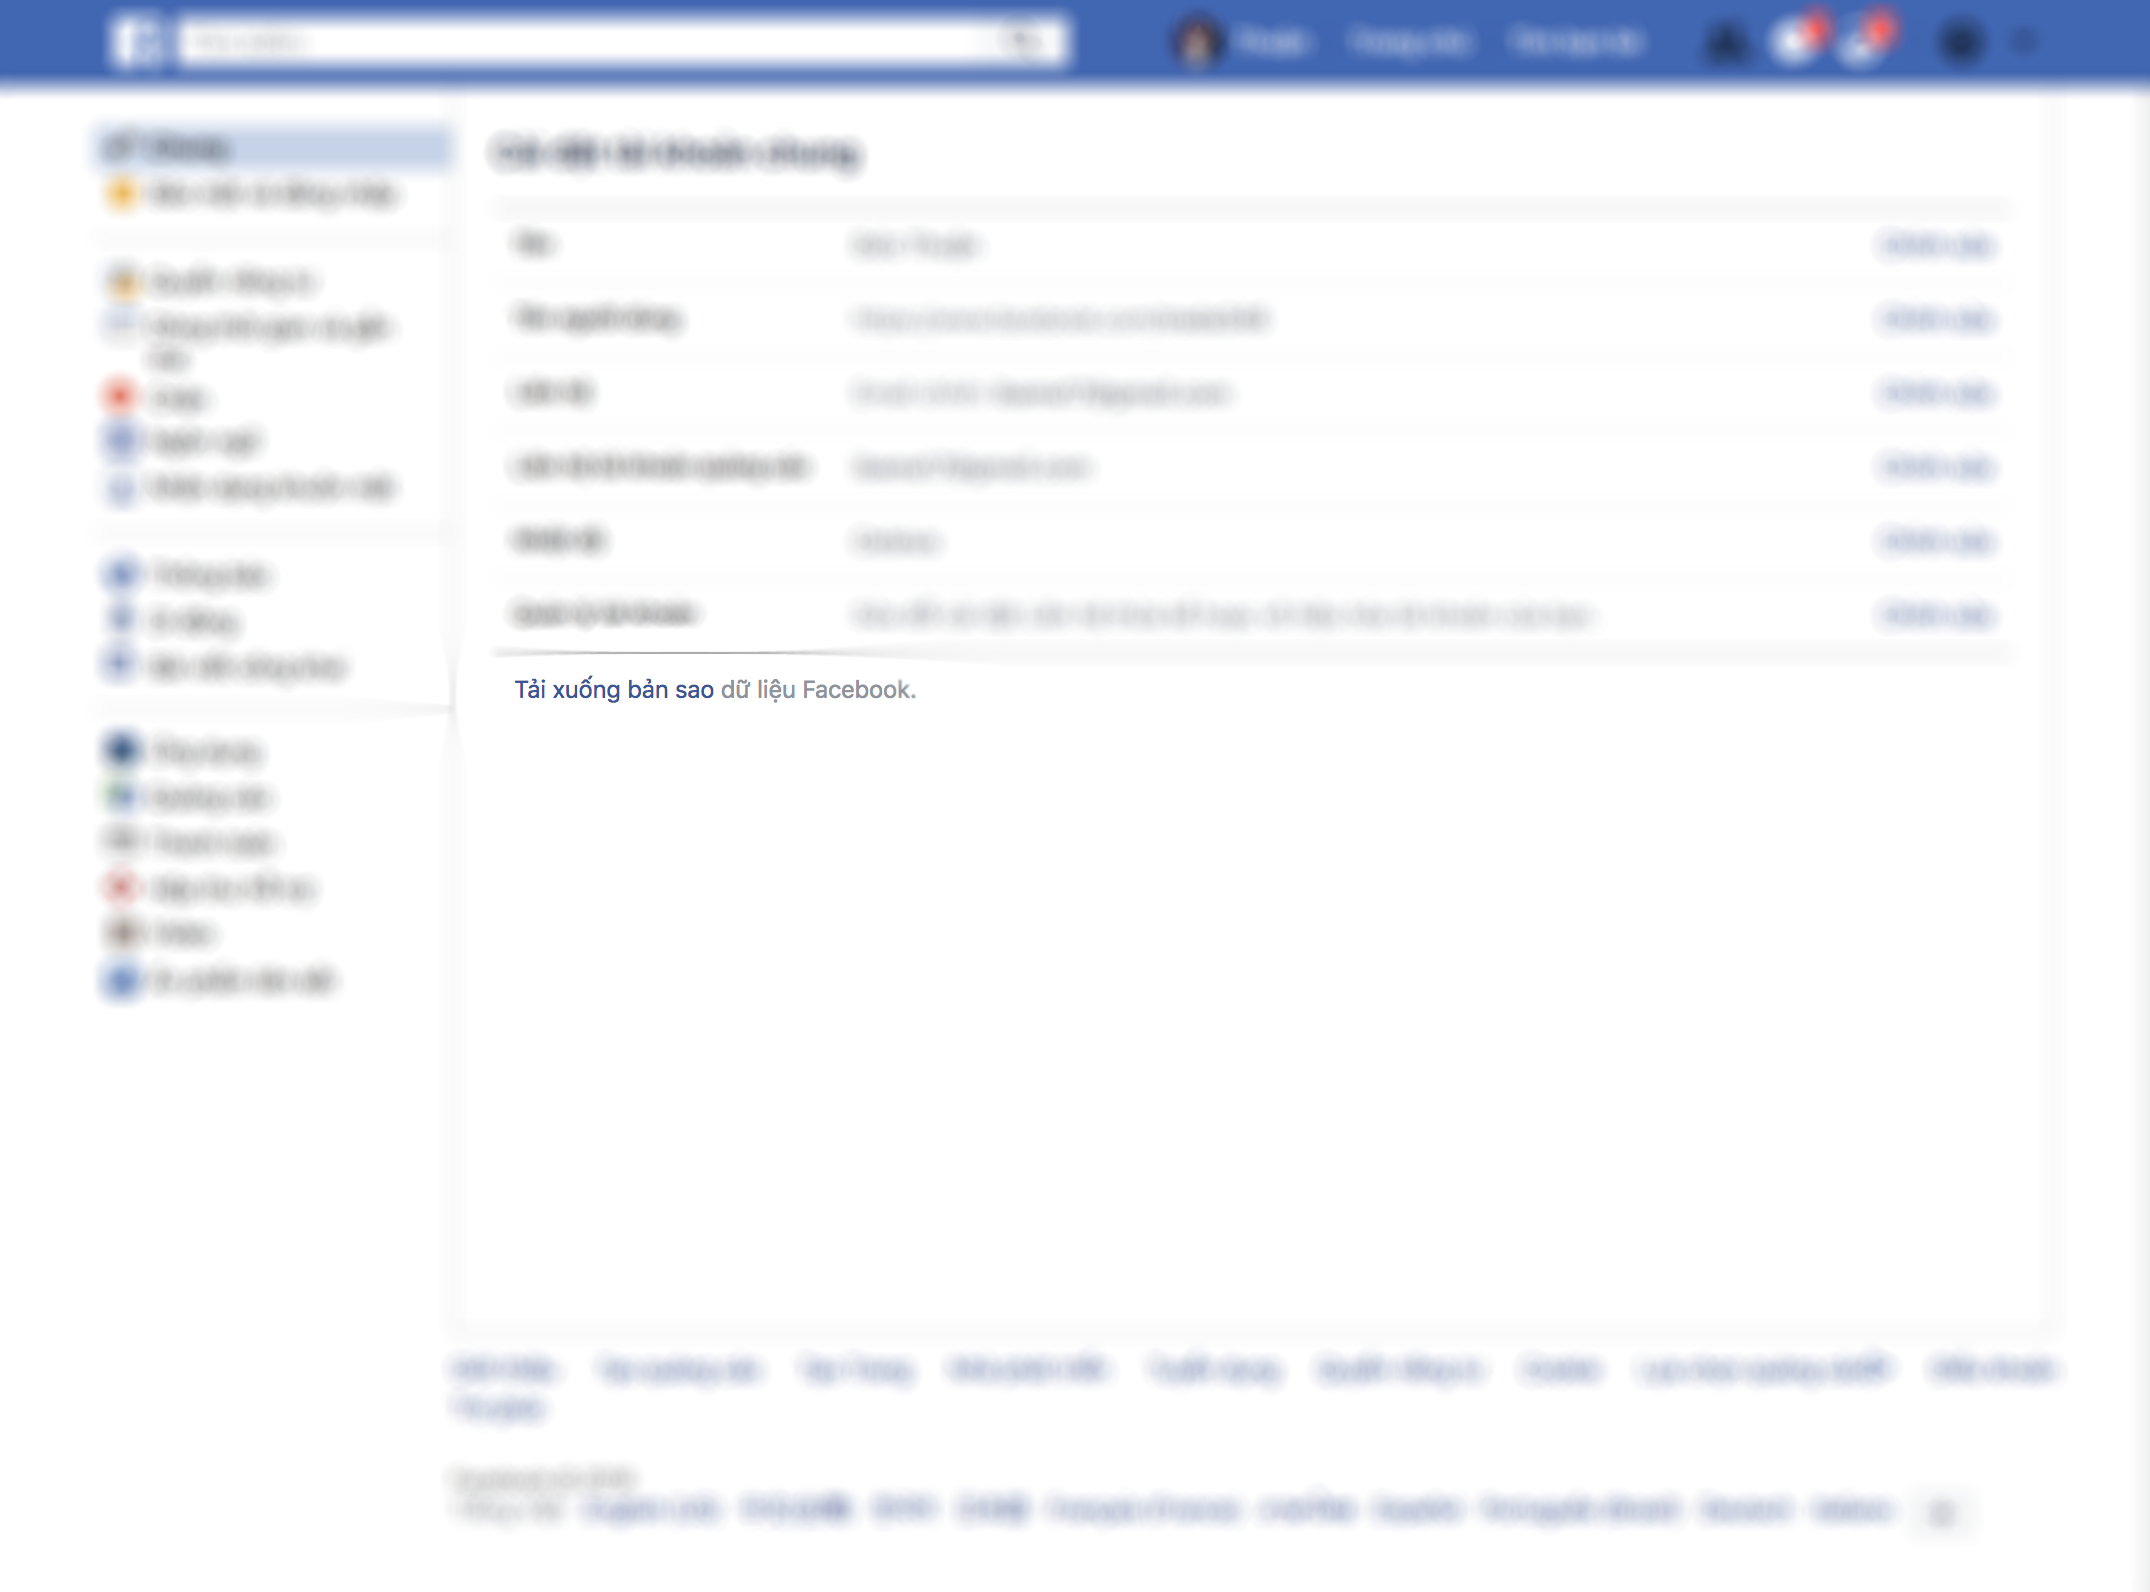 Gói gọn trong 5 mục, Facebook đã lấy được thông tin gì từ bạn?